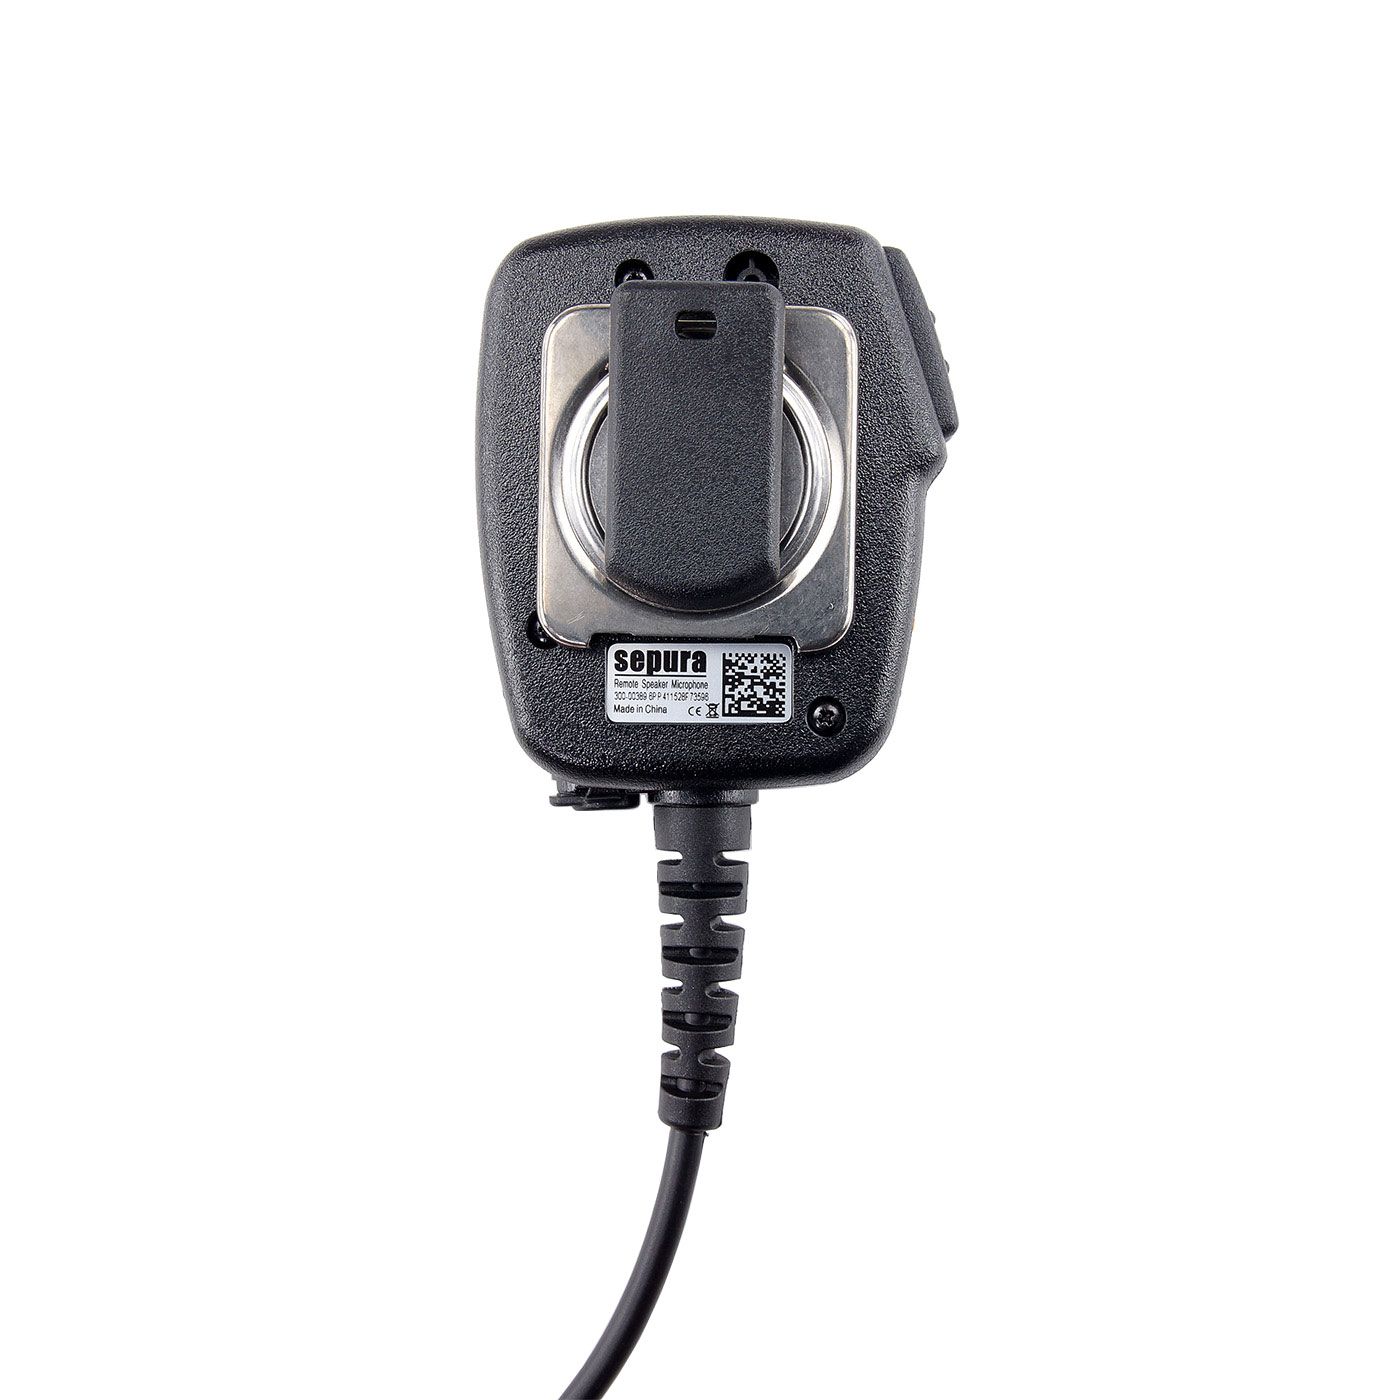 Lautsprecher-Mikrofon IP55, 3,5mm Gewindebuchse u. Notruftaste/60cm Kabel für STP8/9000, SC20, SC21